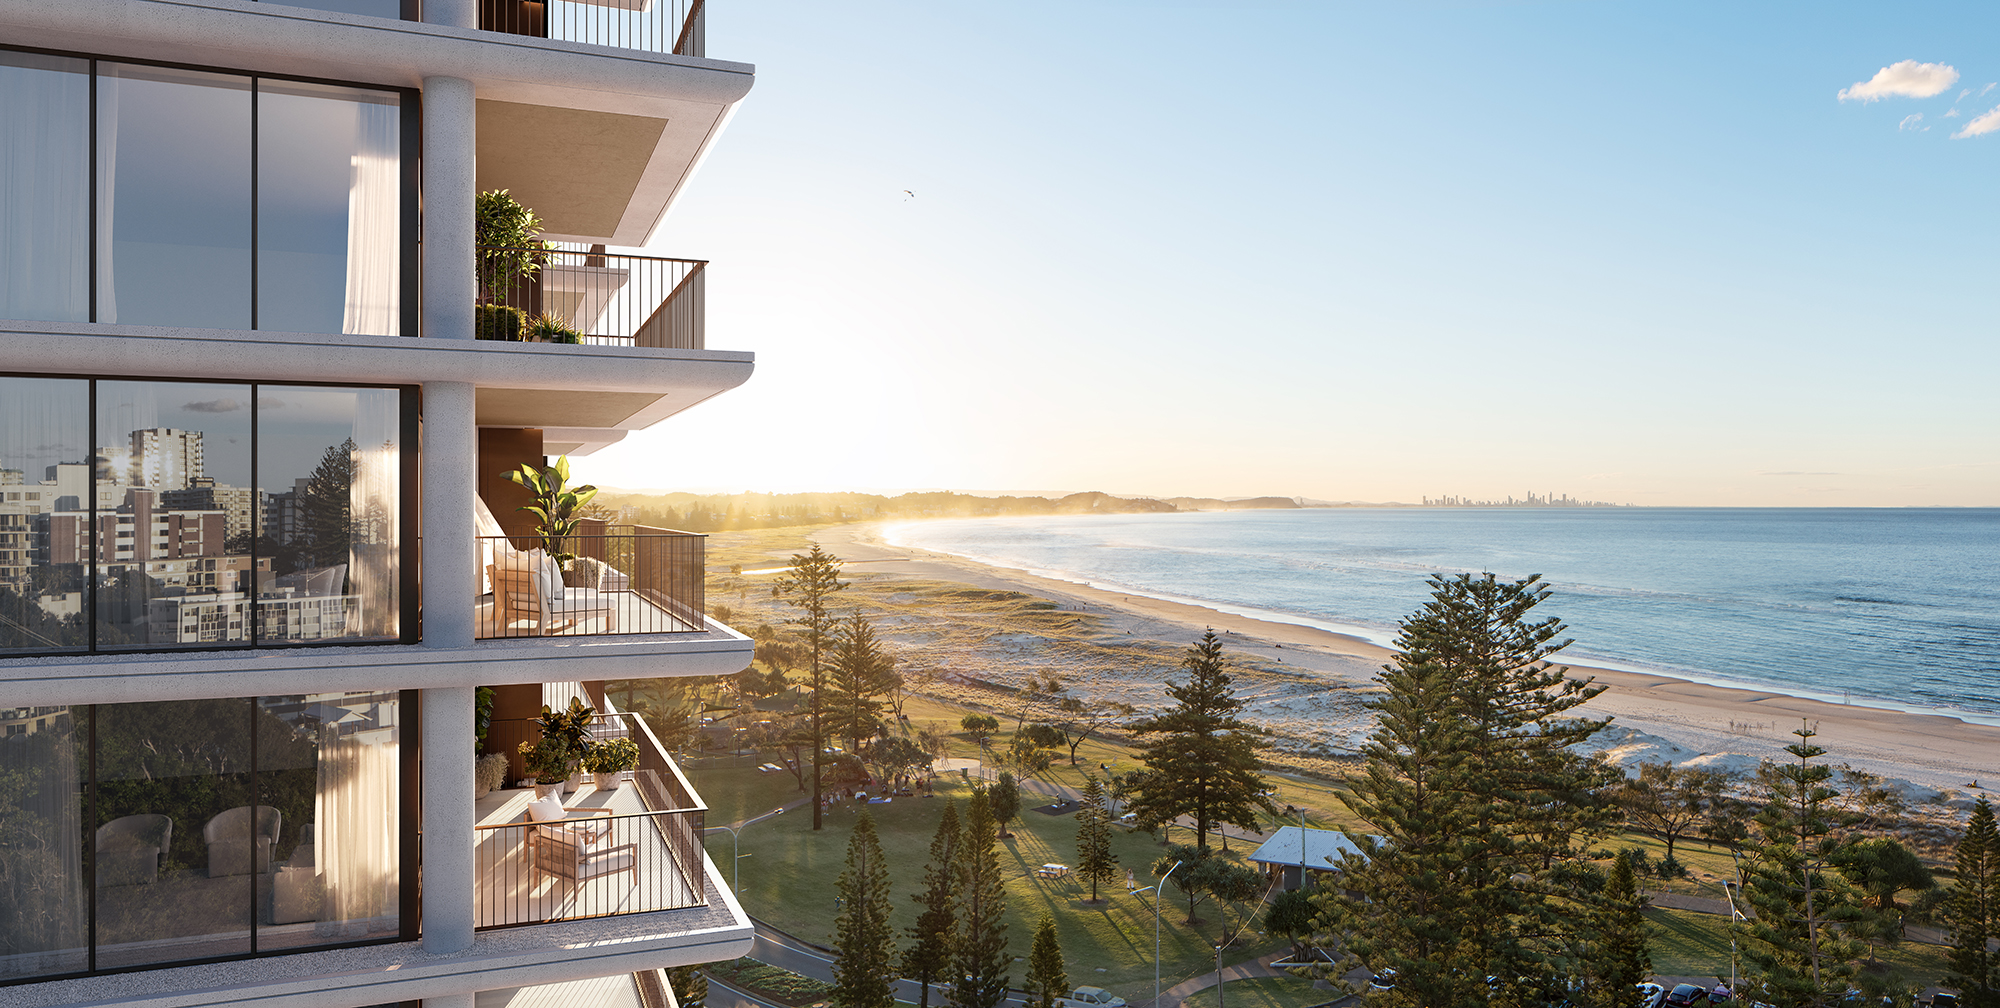 Image of balconies overlooking coastline